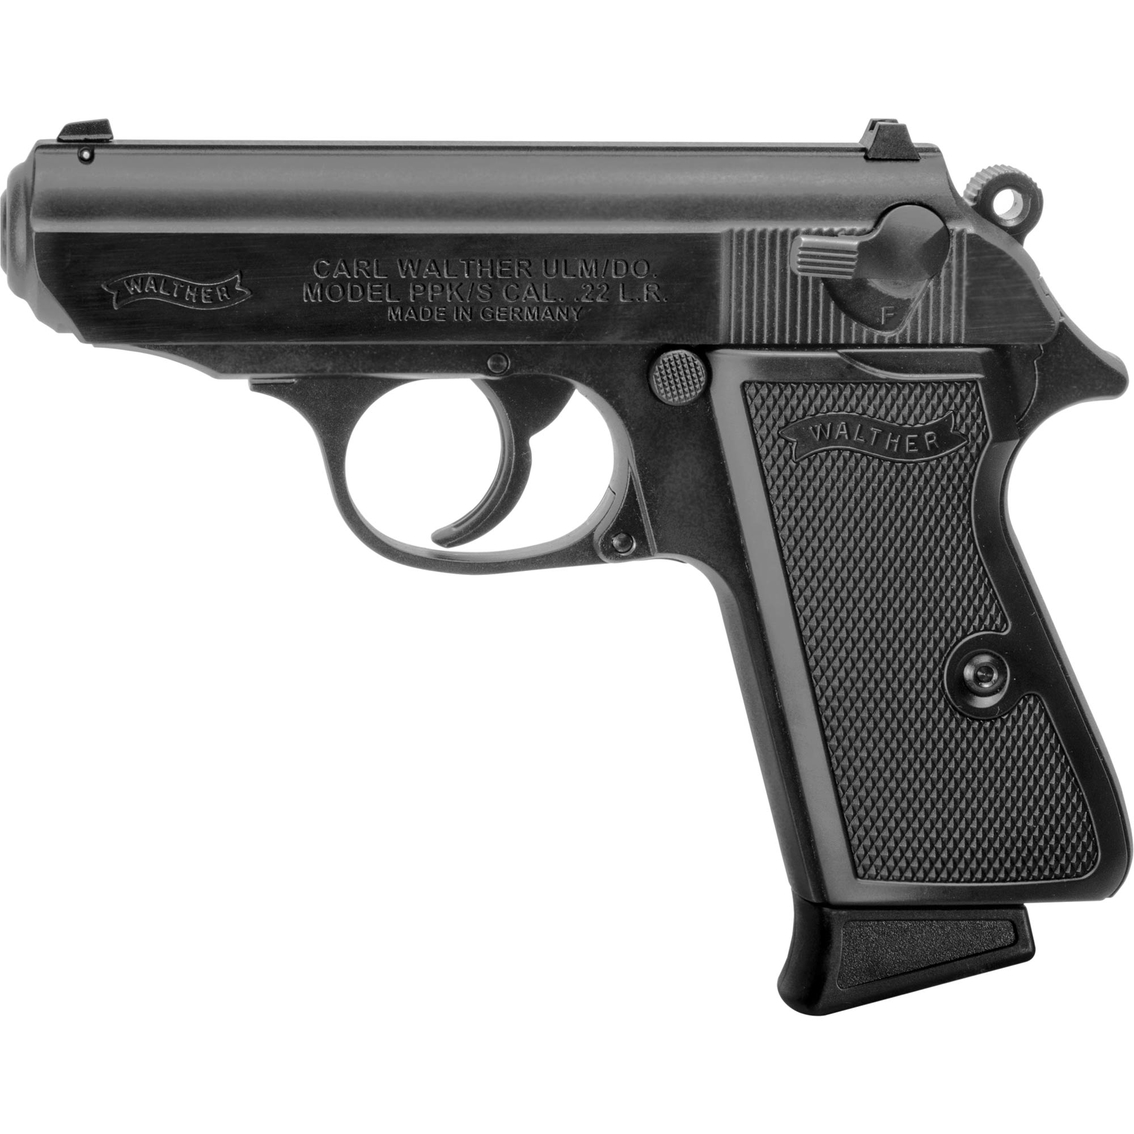 Walther PPK/S 22 LR 3.35 in. Barrel 10 Rnd Pistol Black - Image 2 of 2